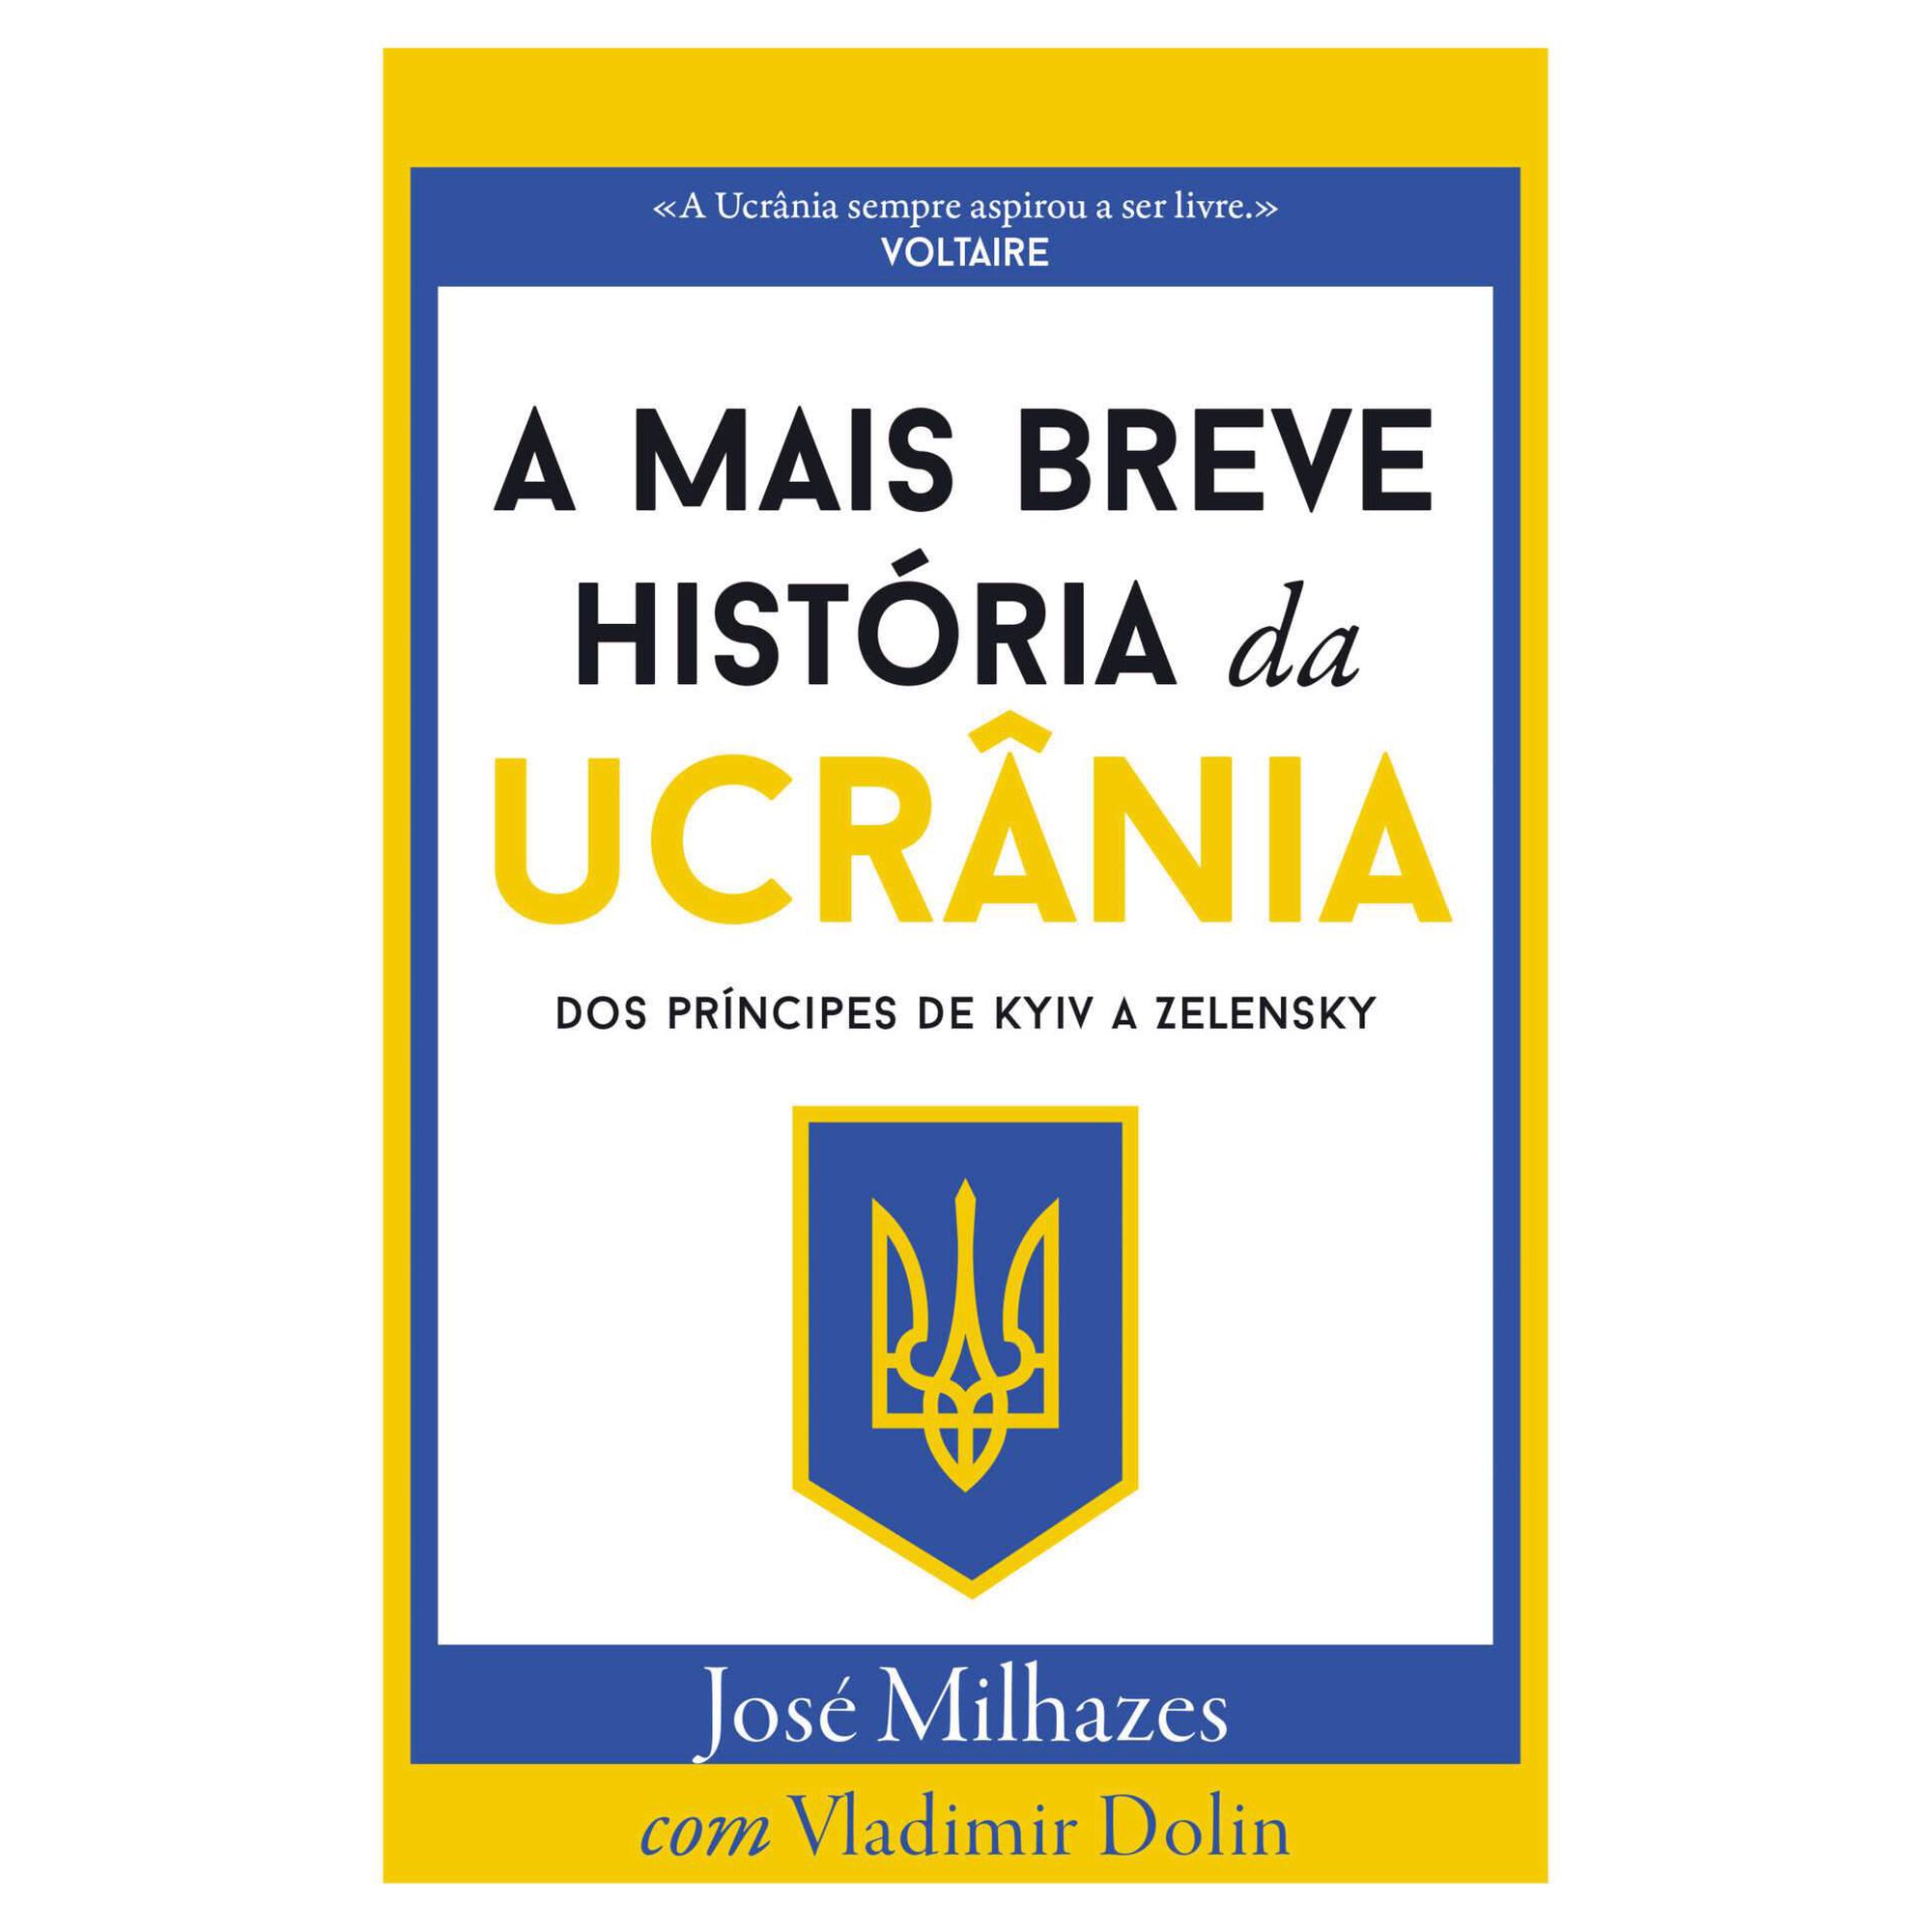 A Mais Breve História da Ucrânia